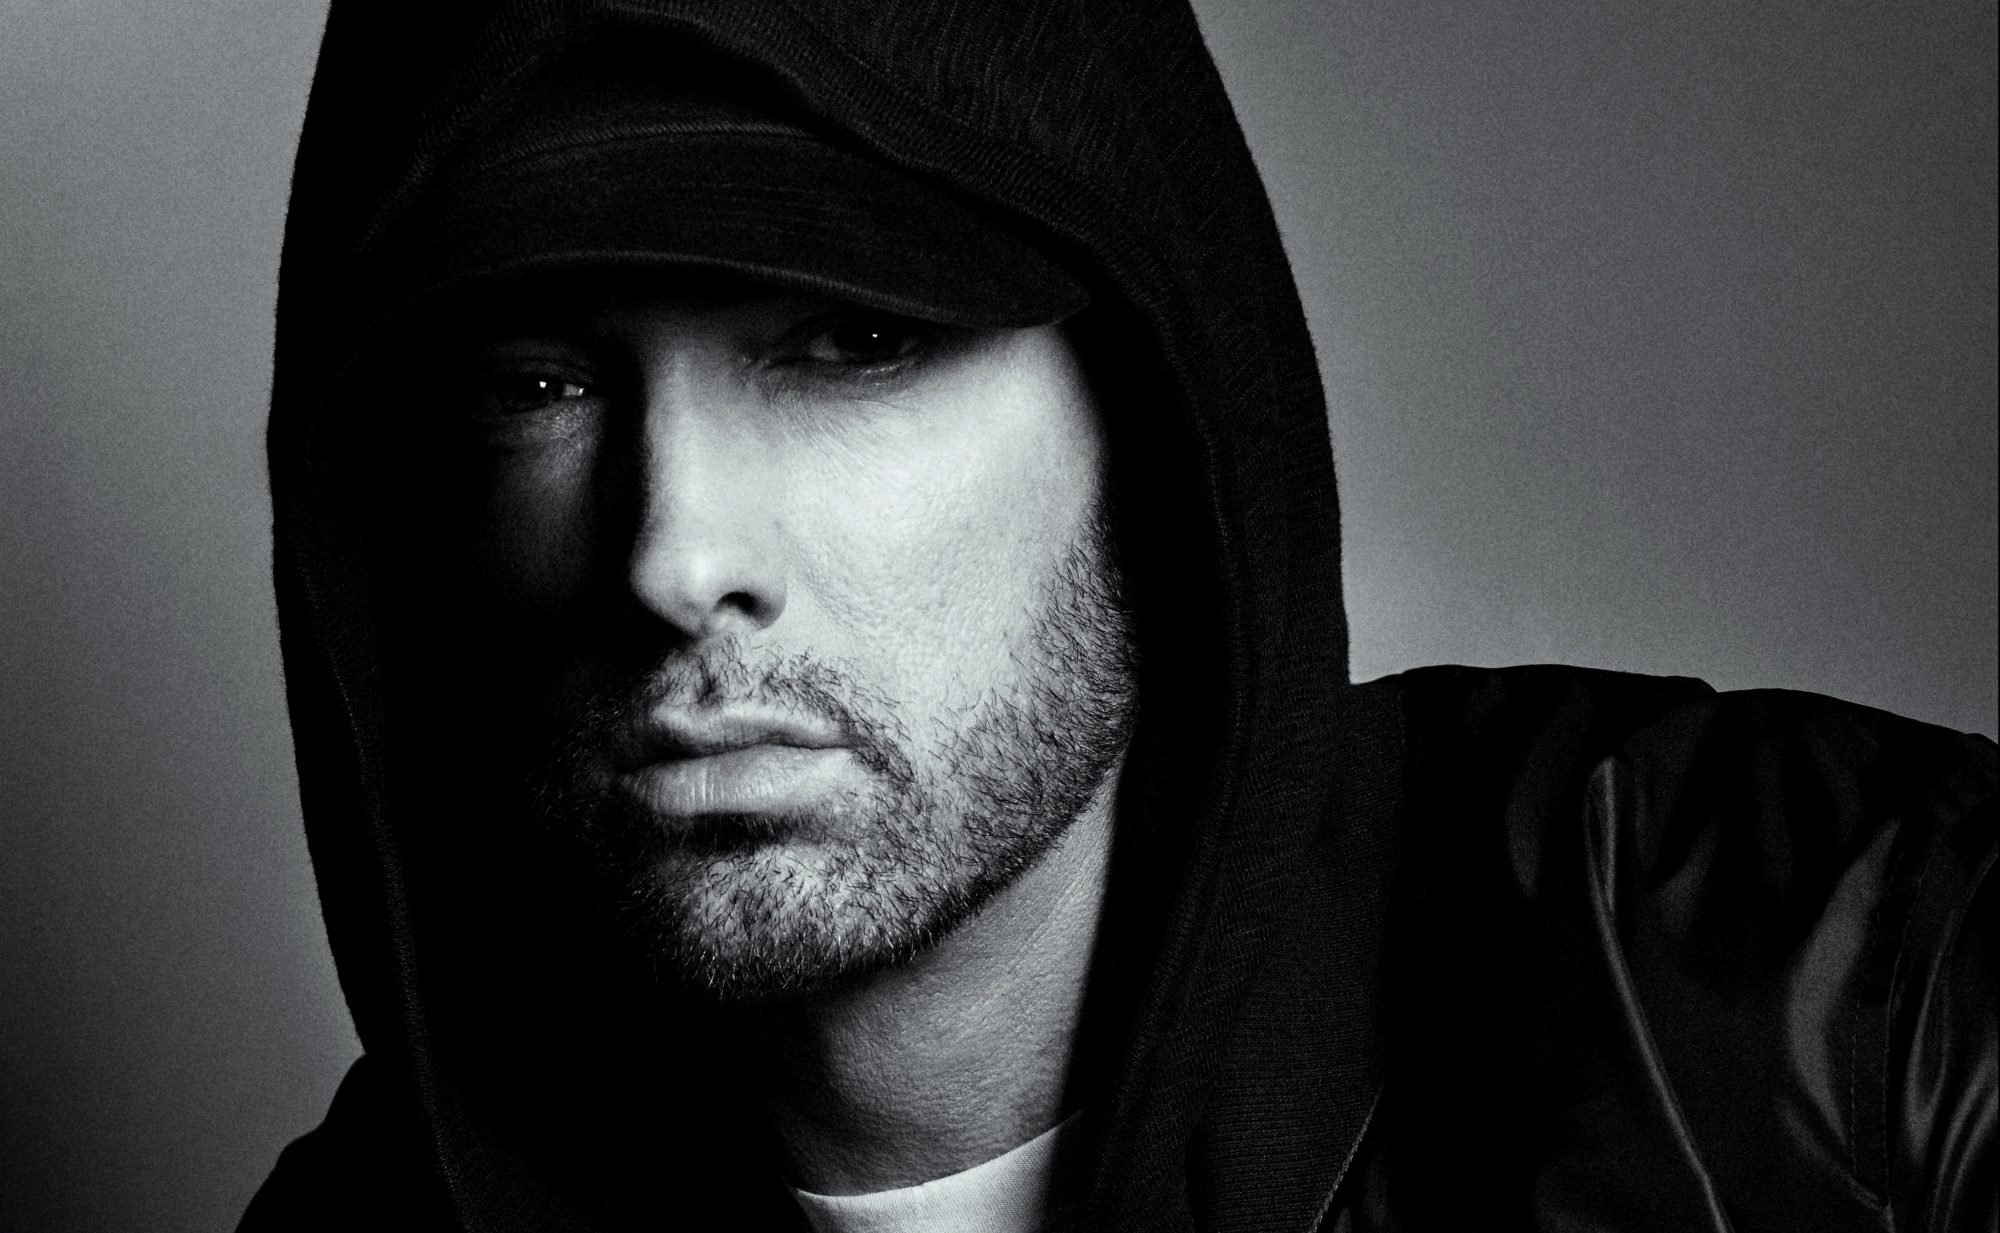 Eminem announces tour dates Festileaks.com